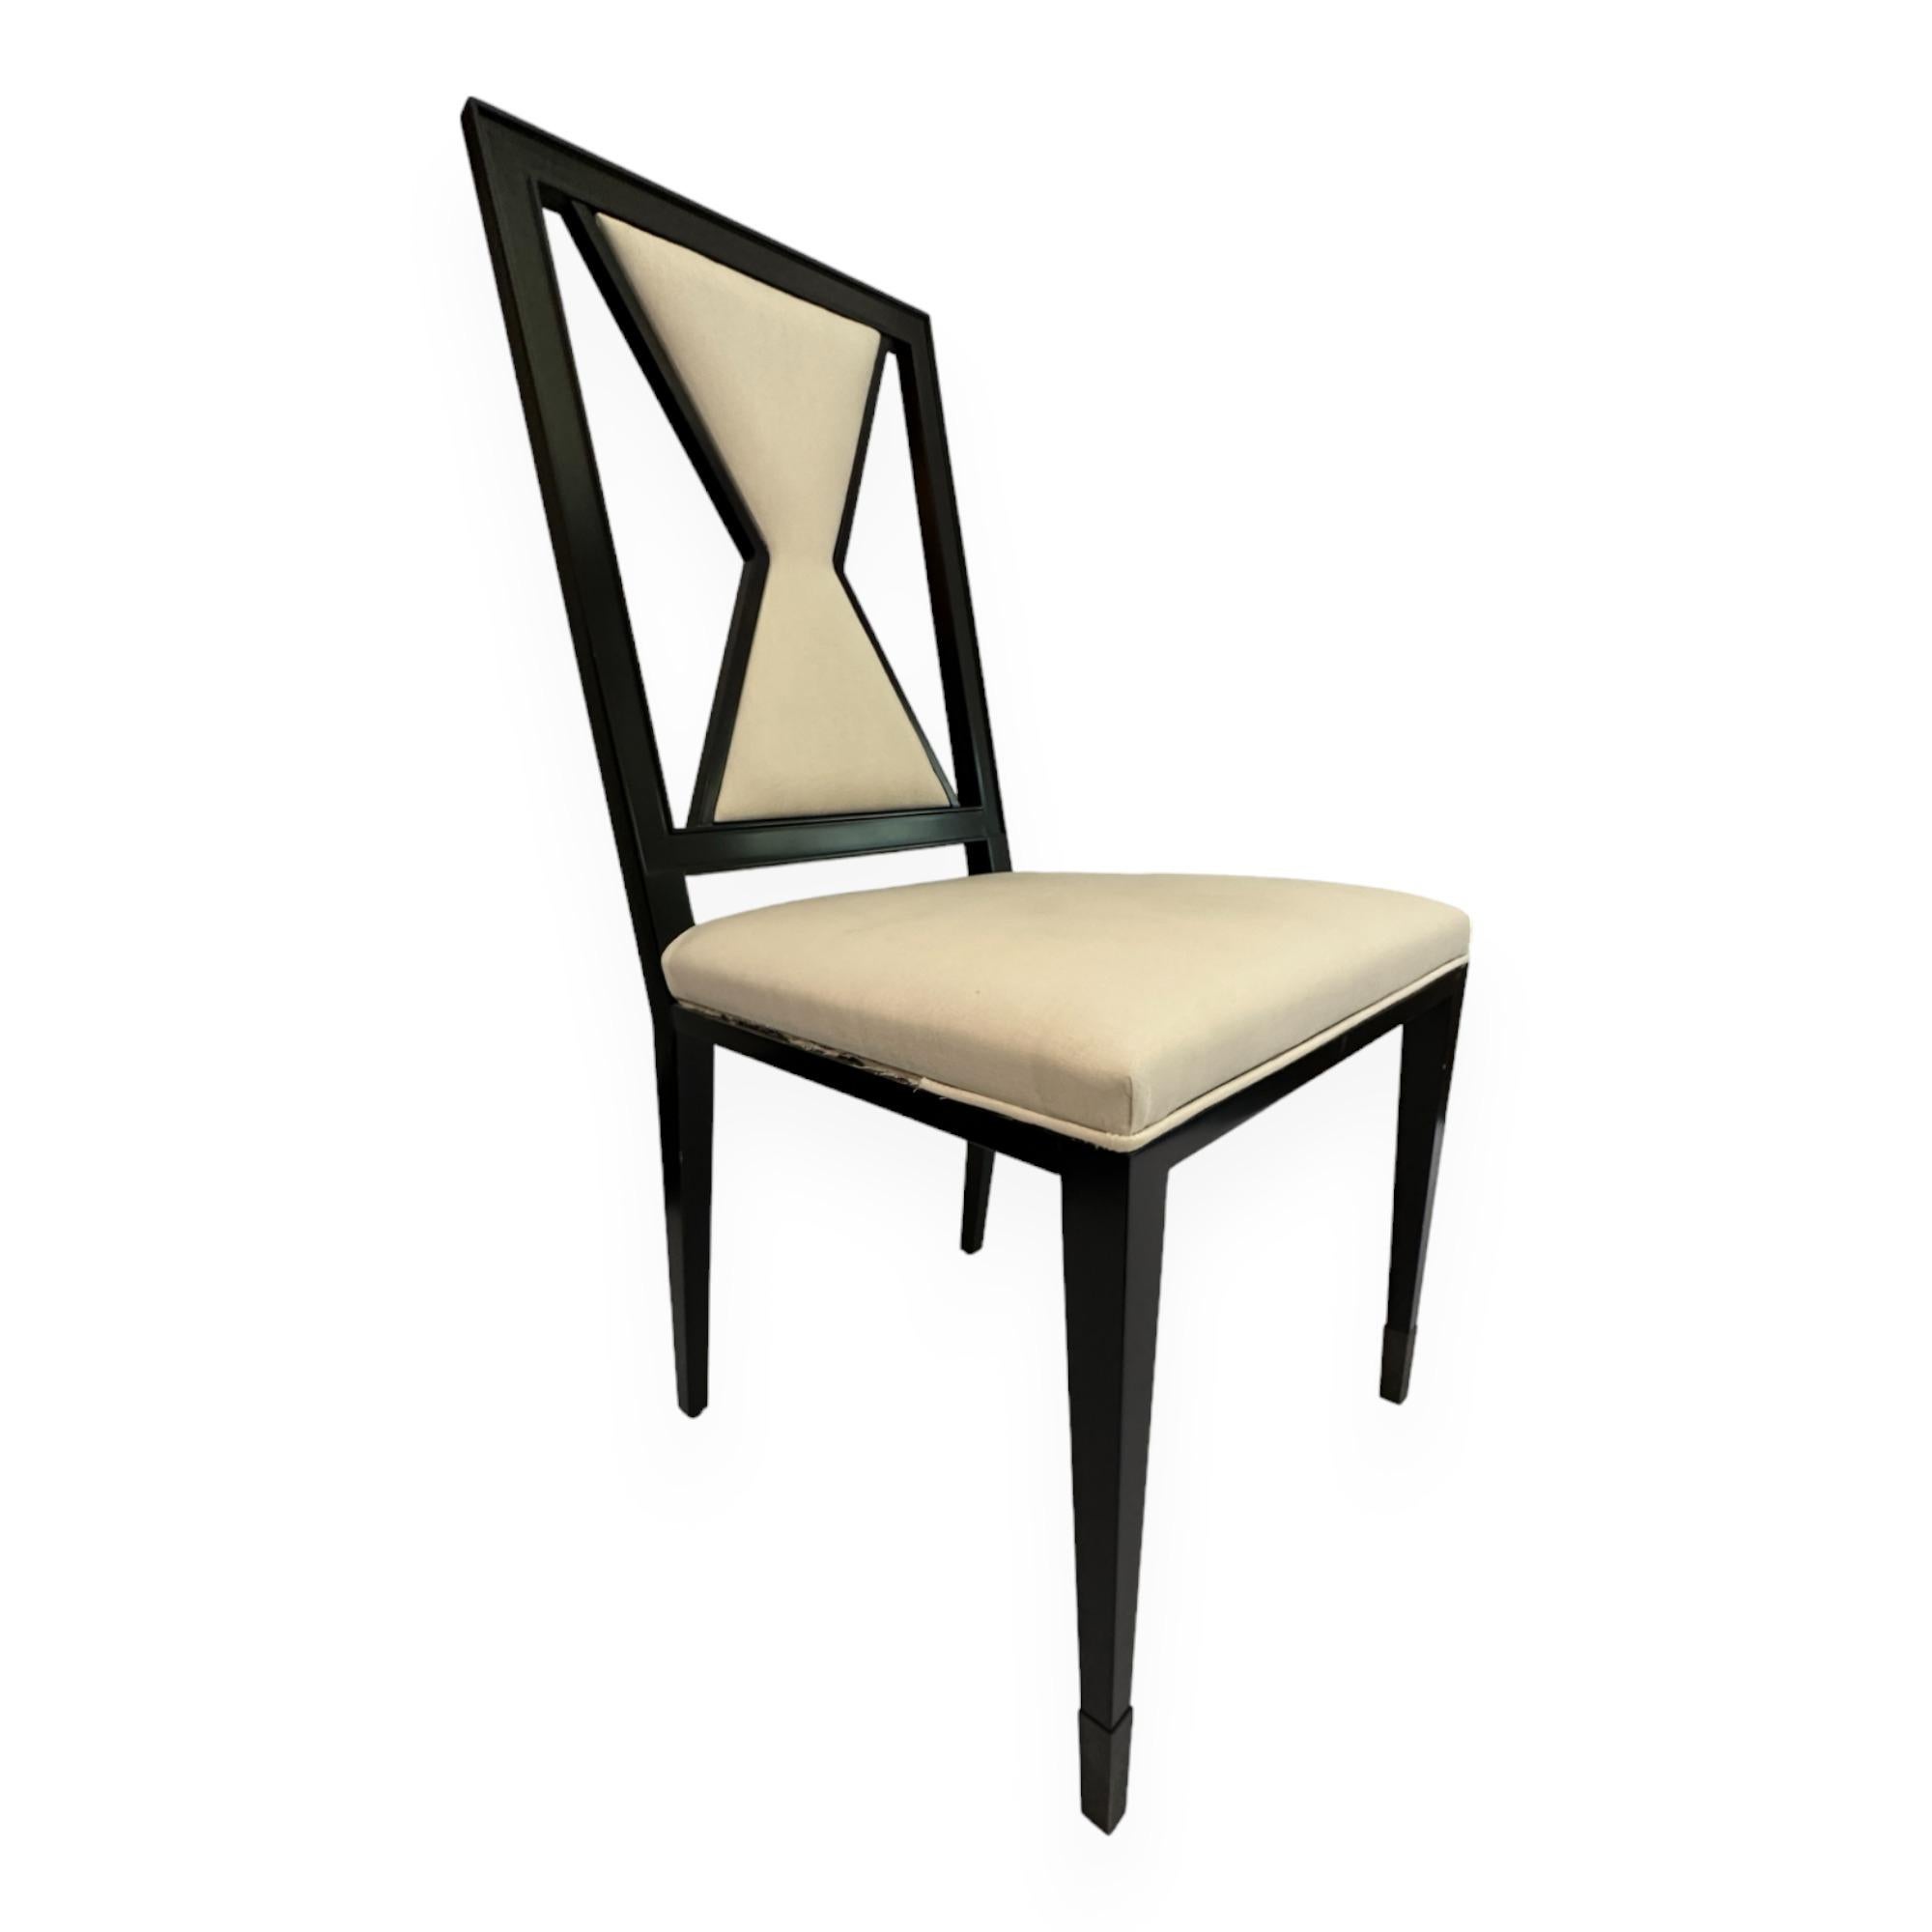 Zeitgenössischer Sessel aus Holz, entworfen von Juan Montoya. Dieses einzigartige, schwarz lackierte Stück hat eine geometrisch geformte Rückenlehne. Sein Design und seine Farbe lassen verschiedene Bezugsstoffe und Muster zu. 